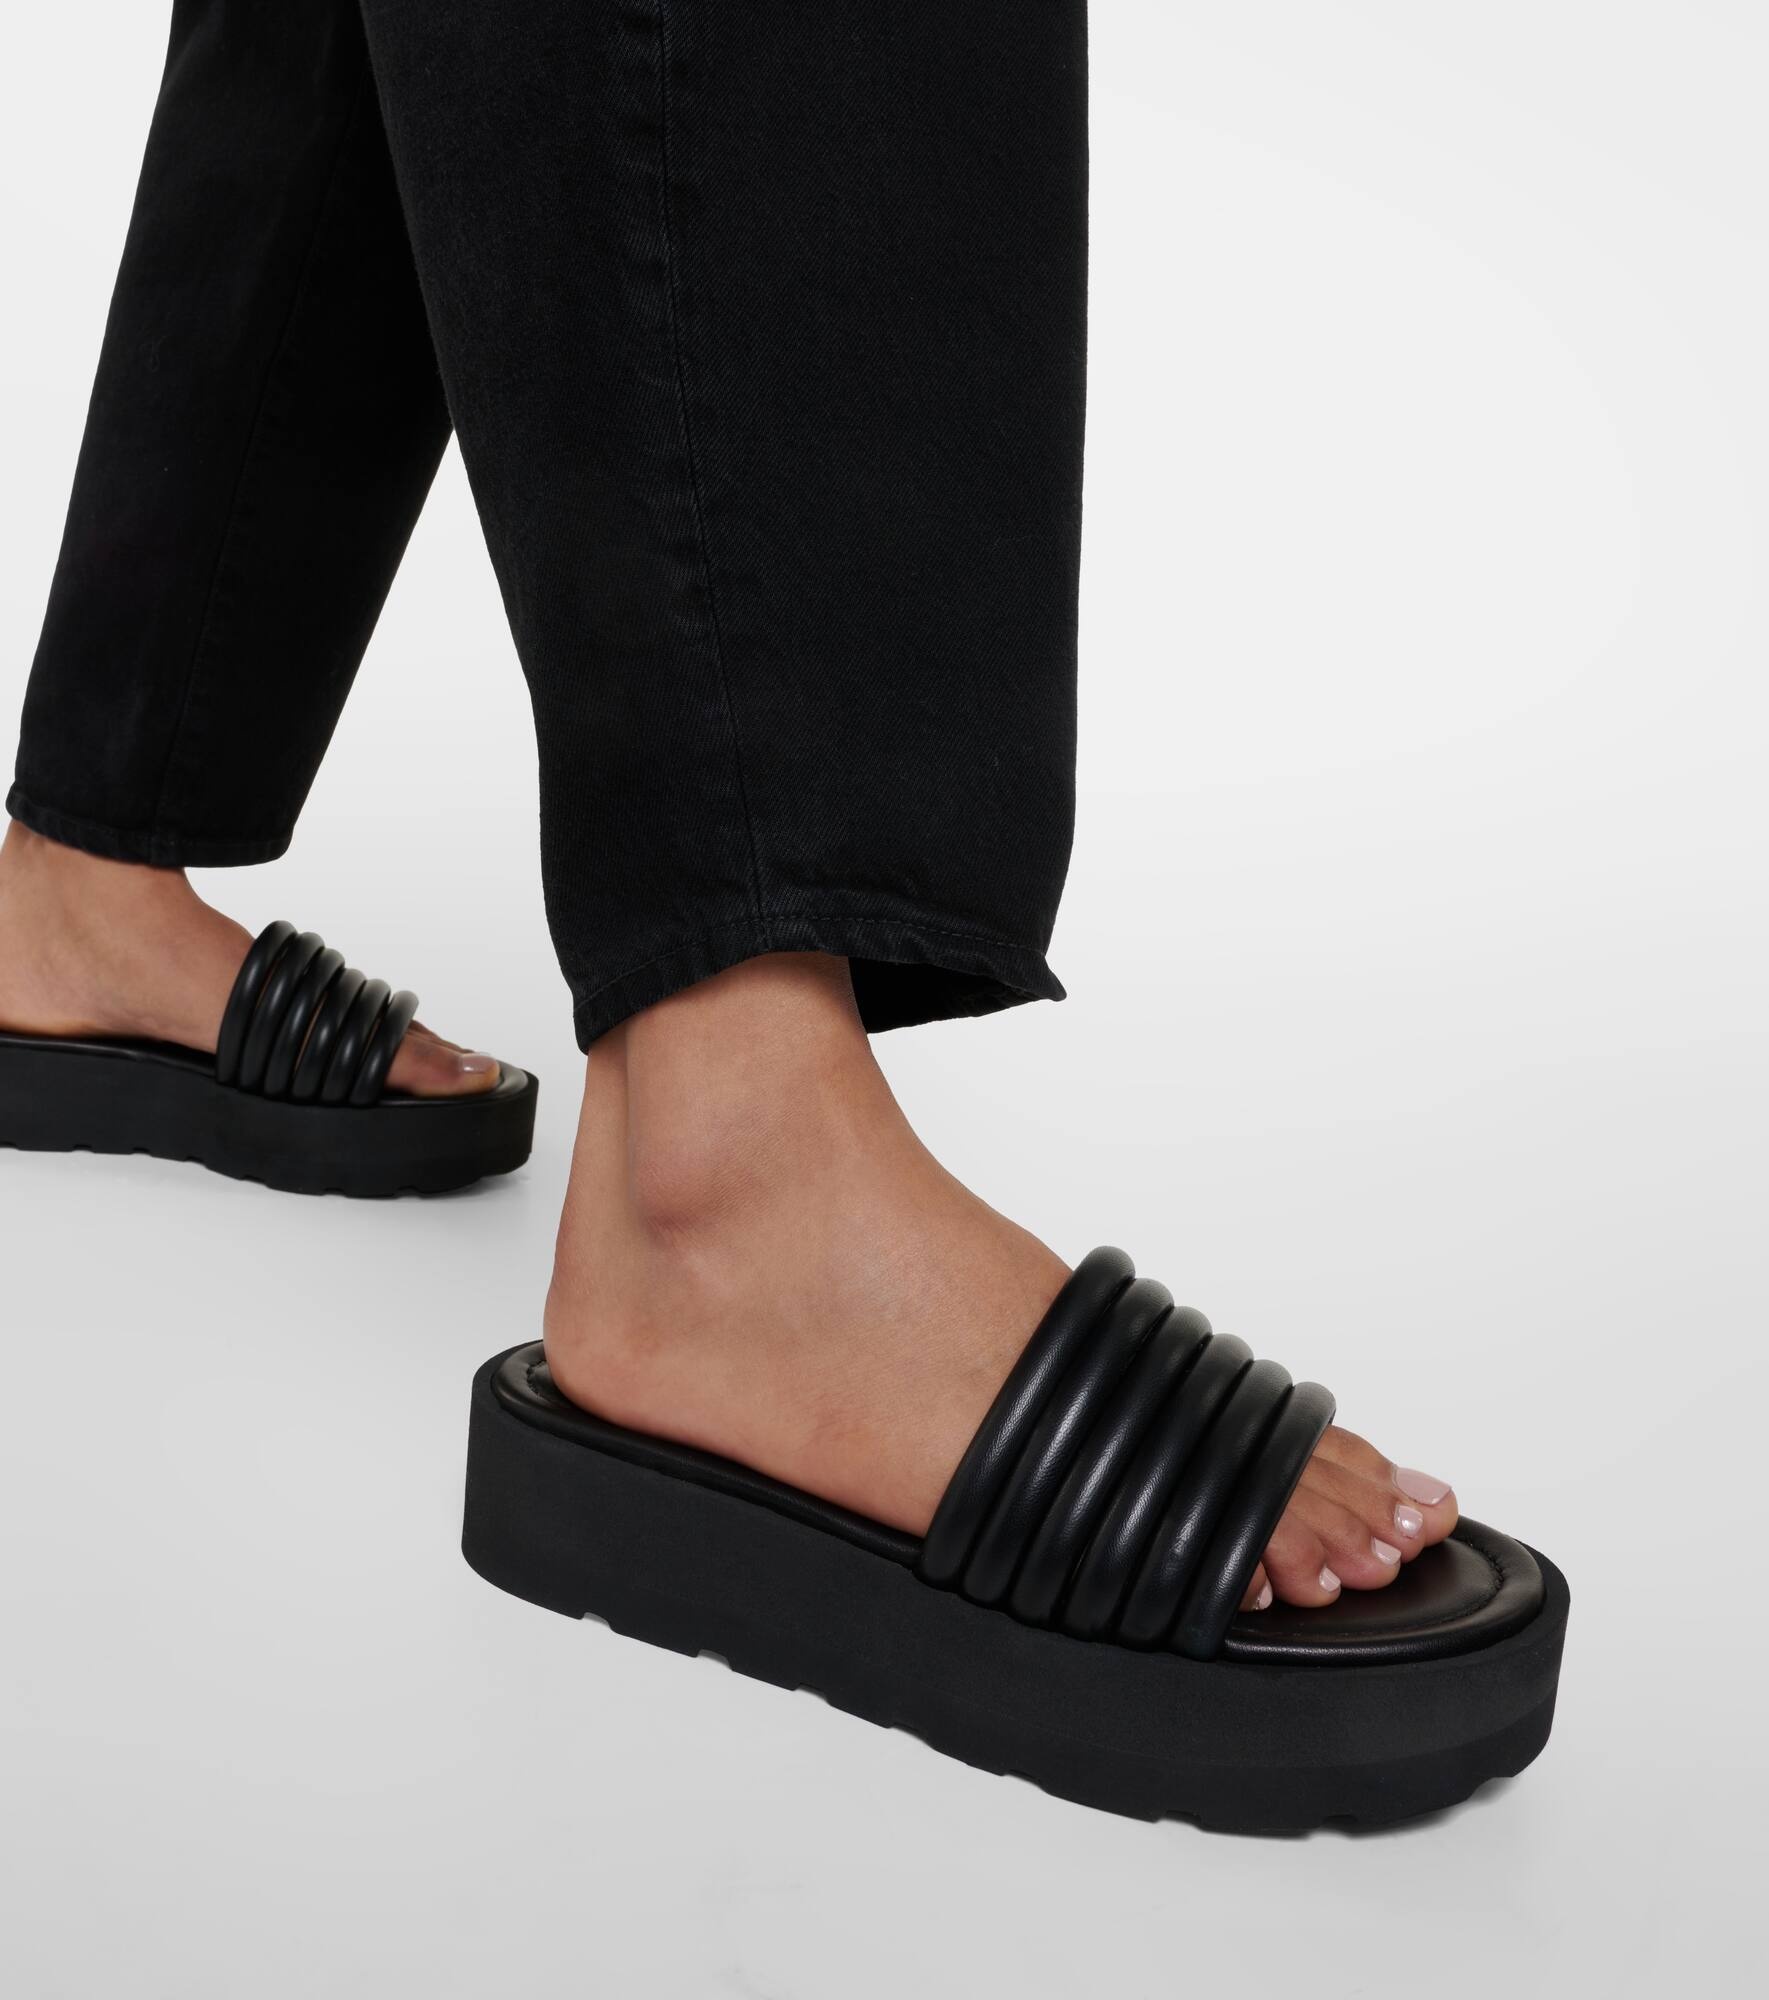 Leather platform sandals - 4